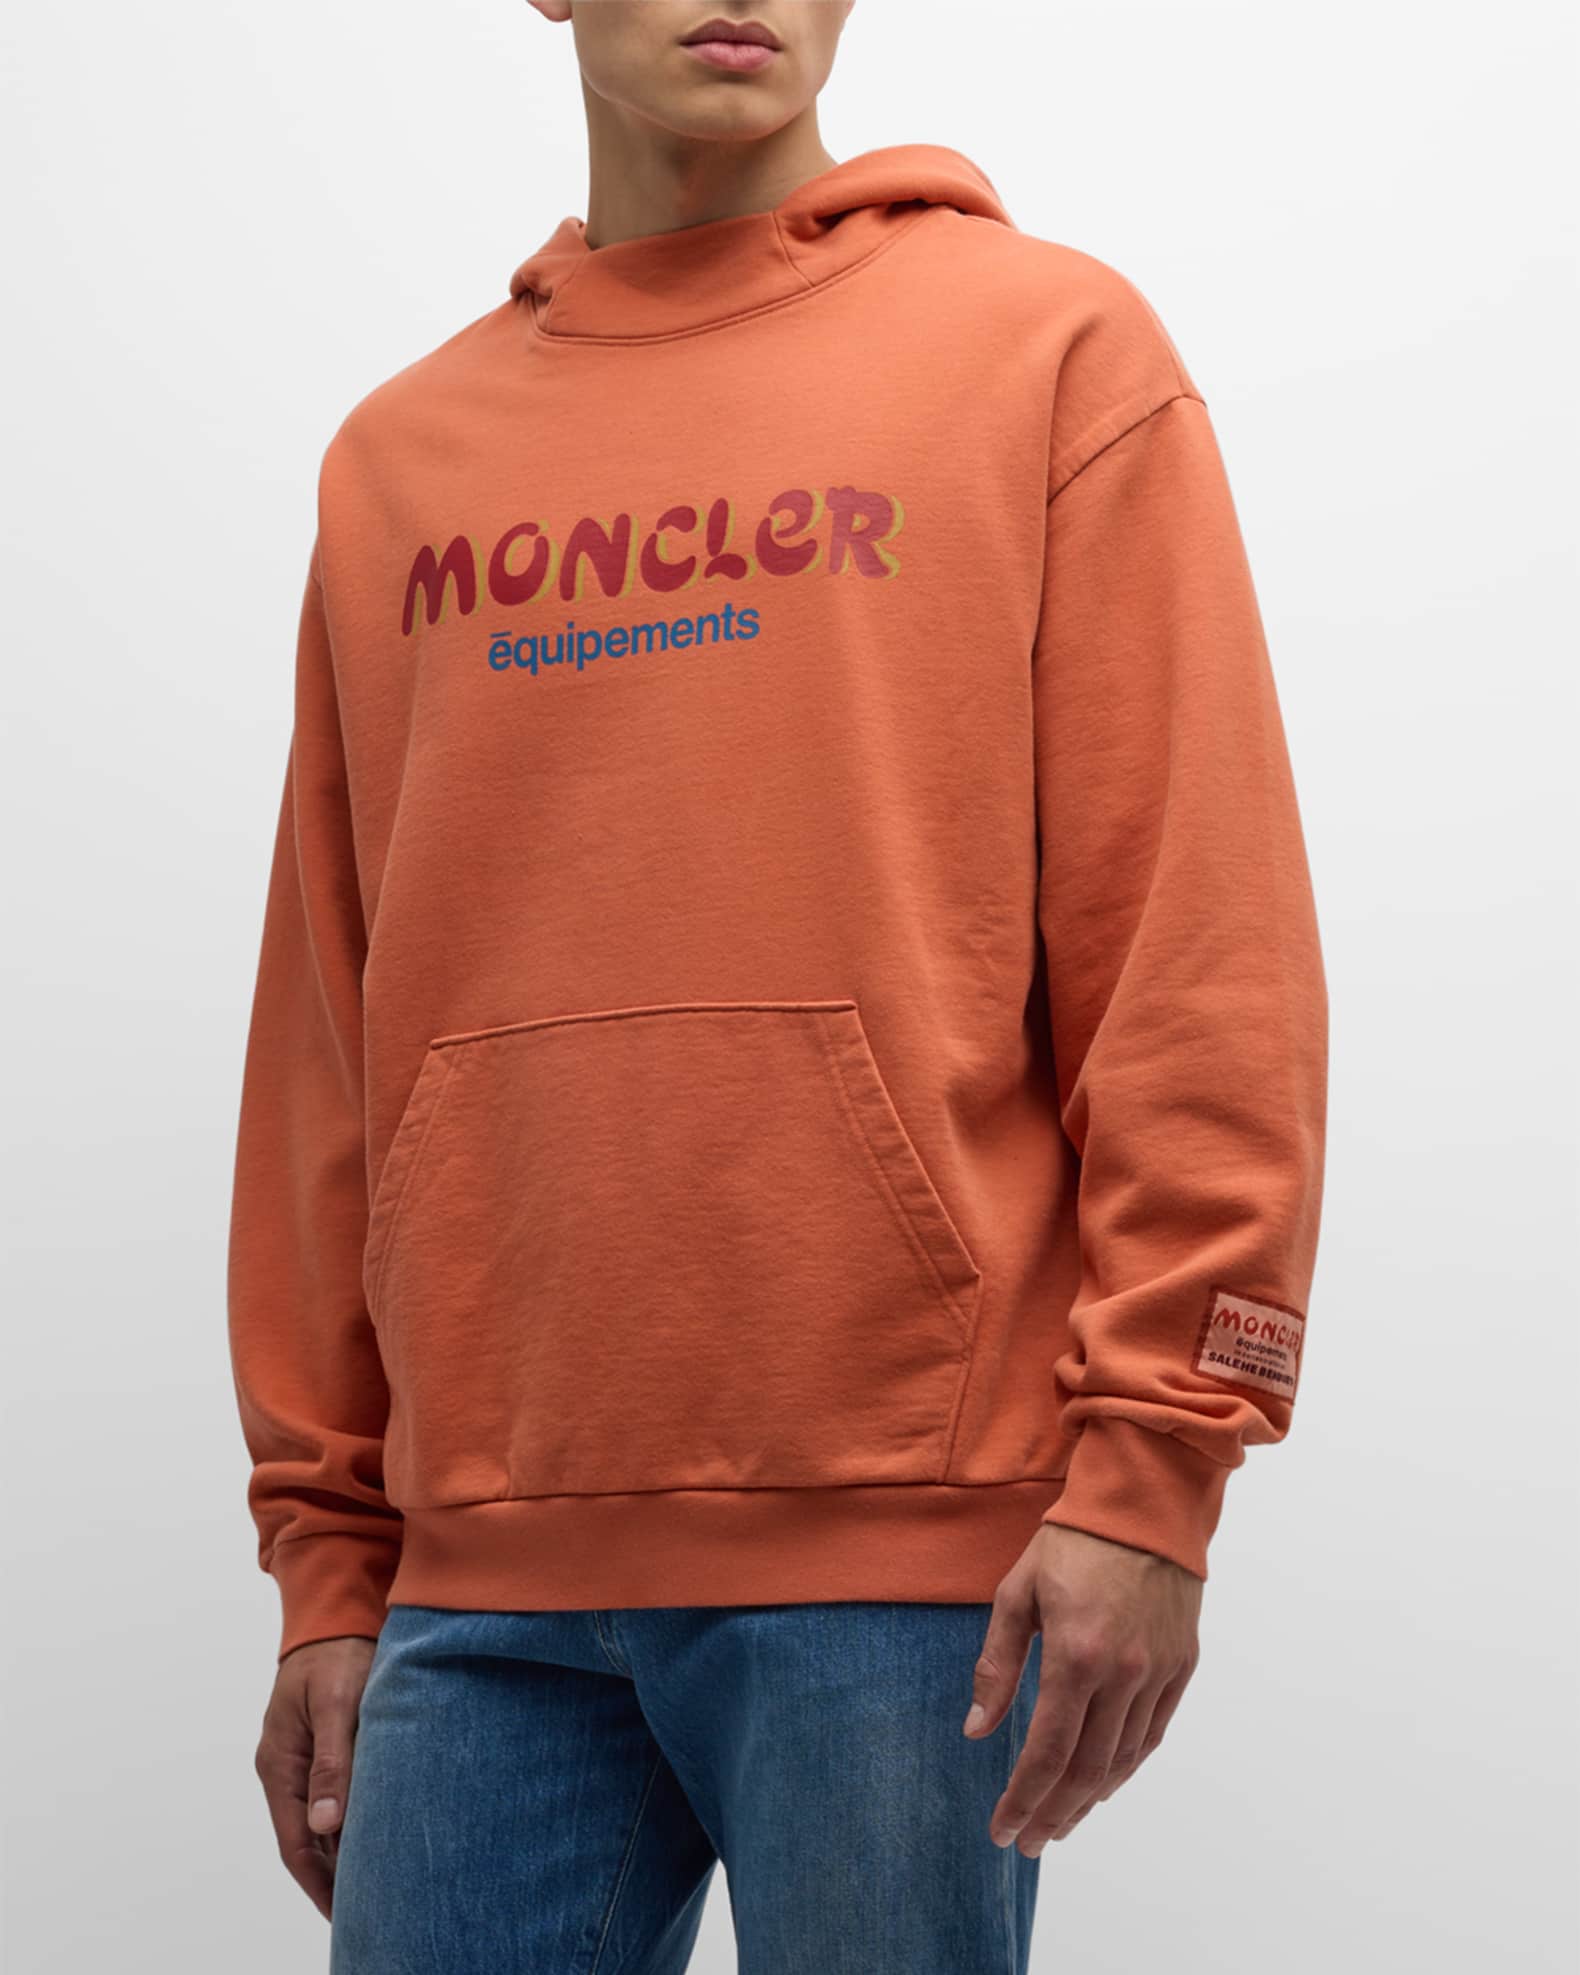 Moncler x Salehe Bembury Logo T-Shirt